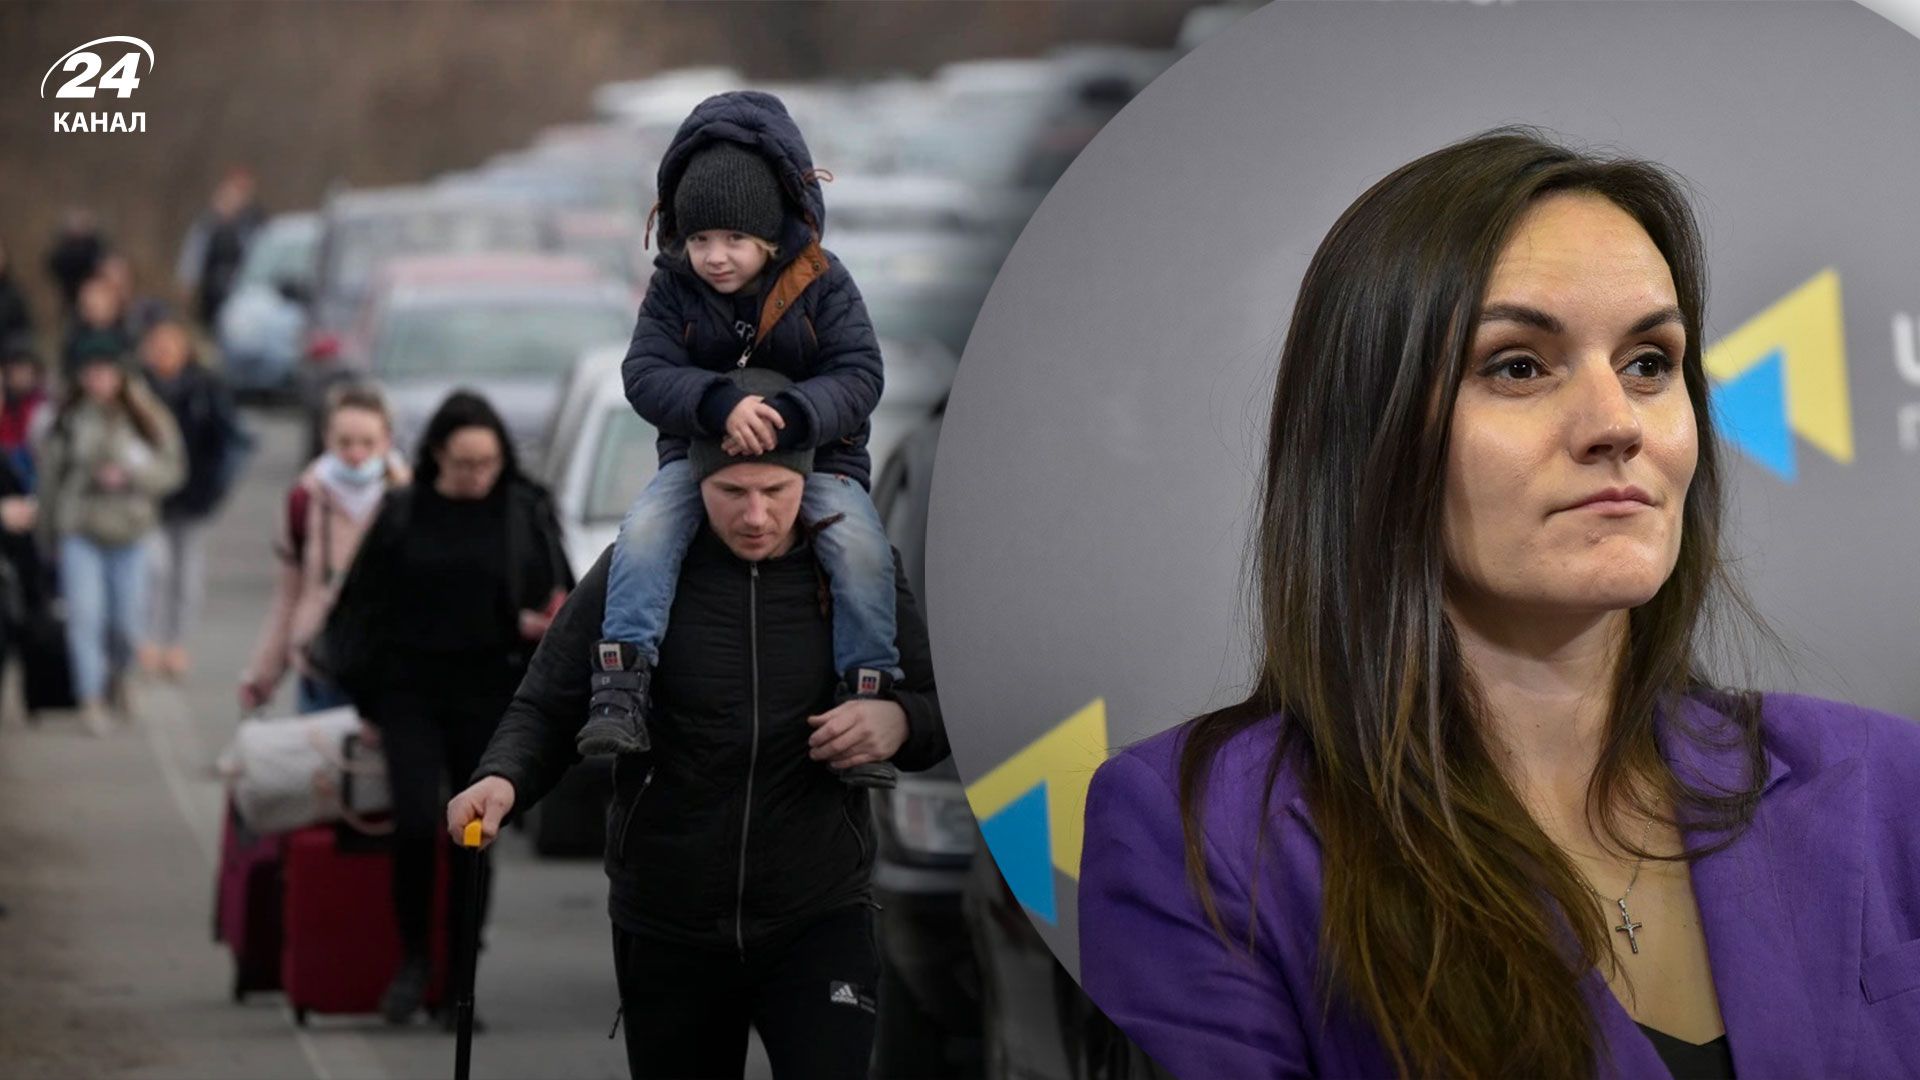 Сколько людей потерял украинский рынок труда из-за полномасштабной войны